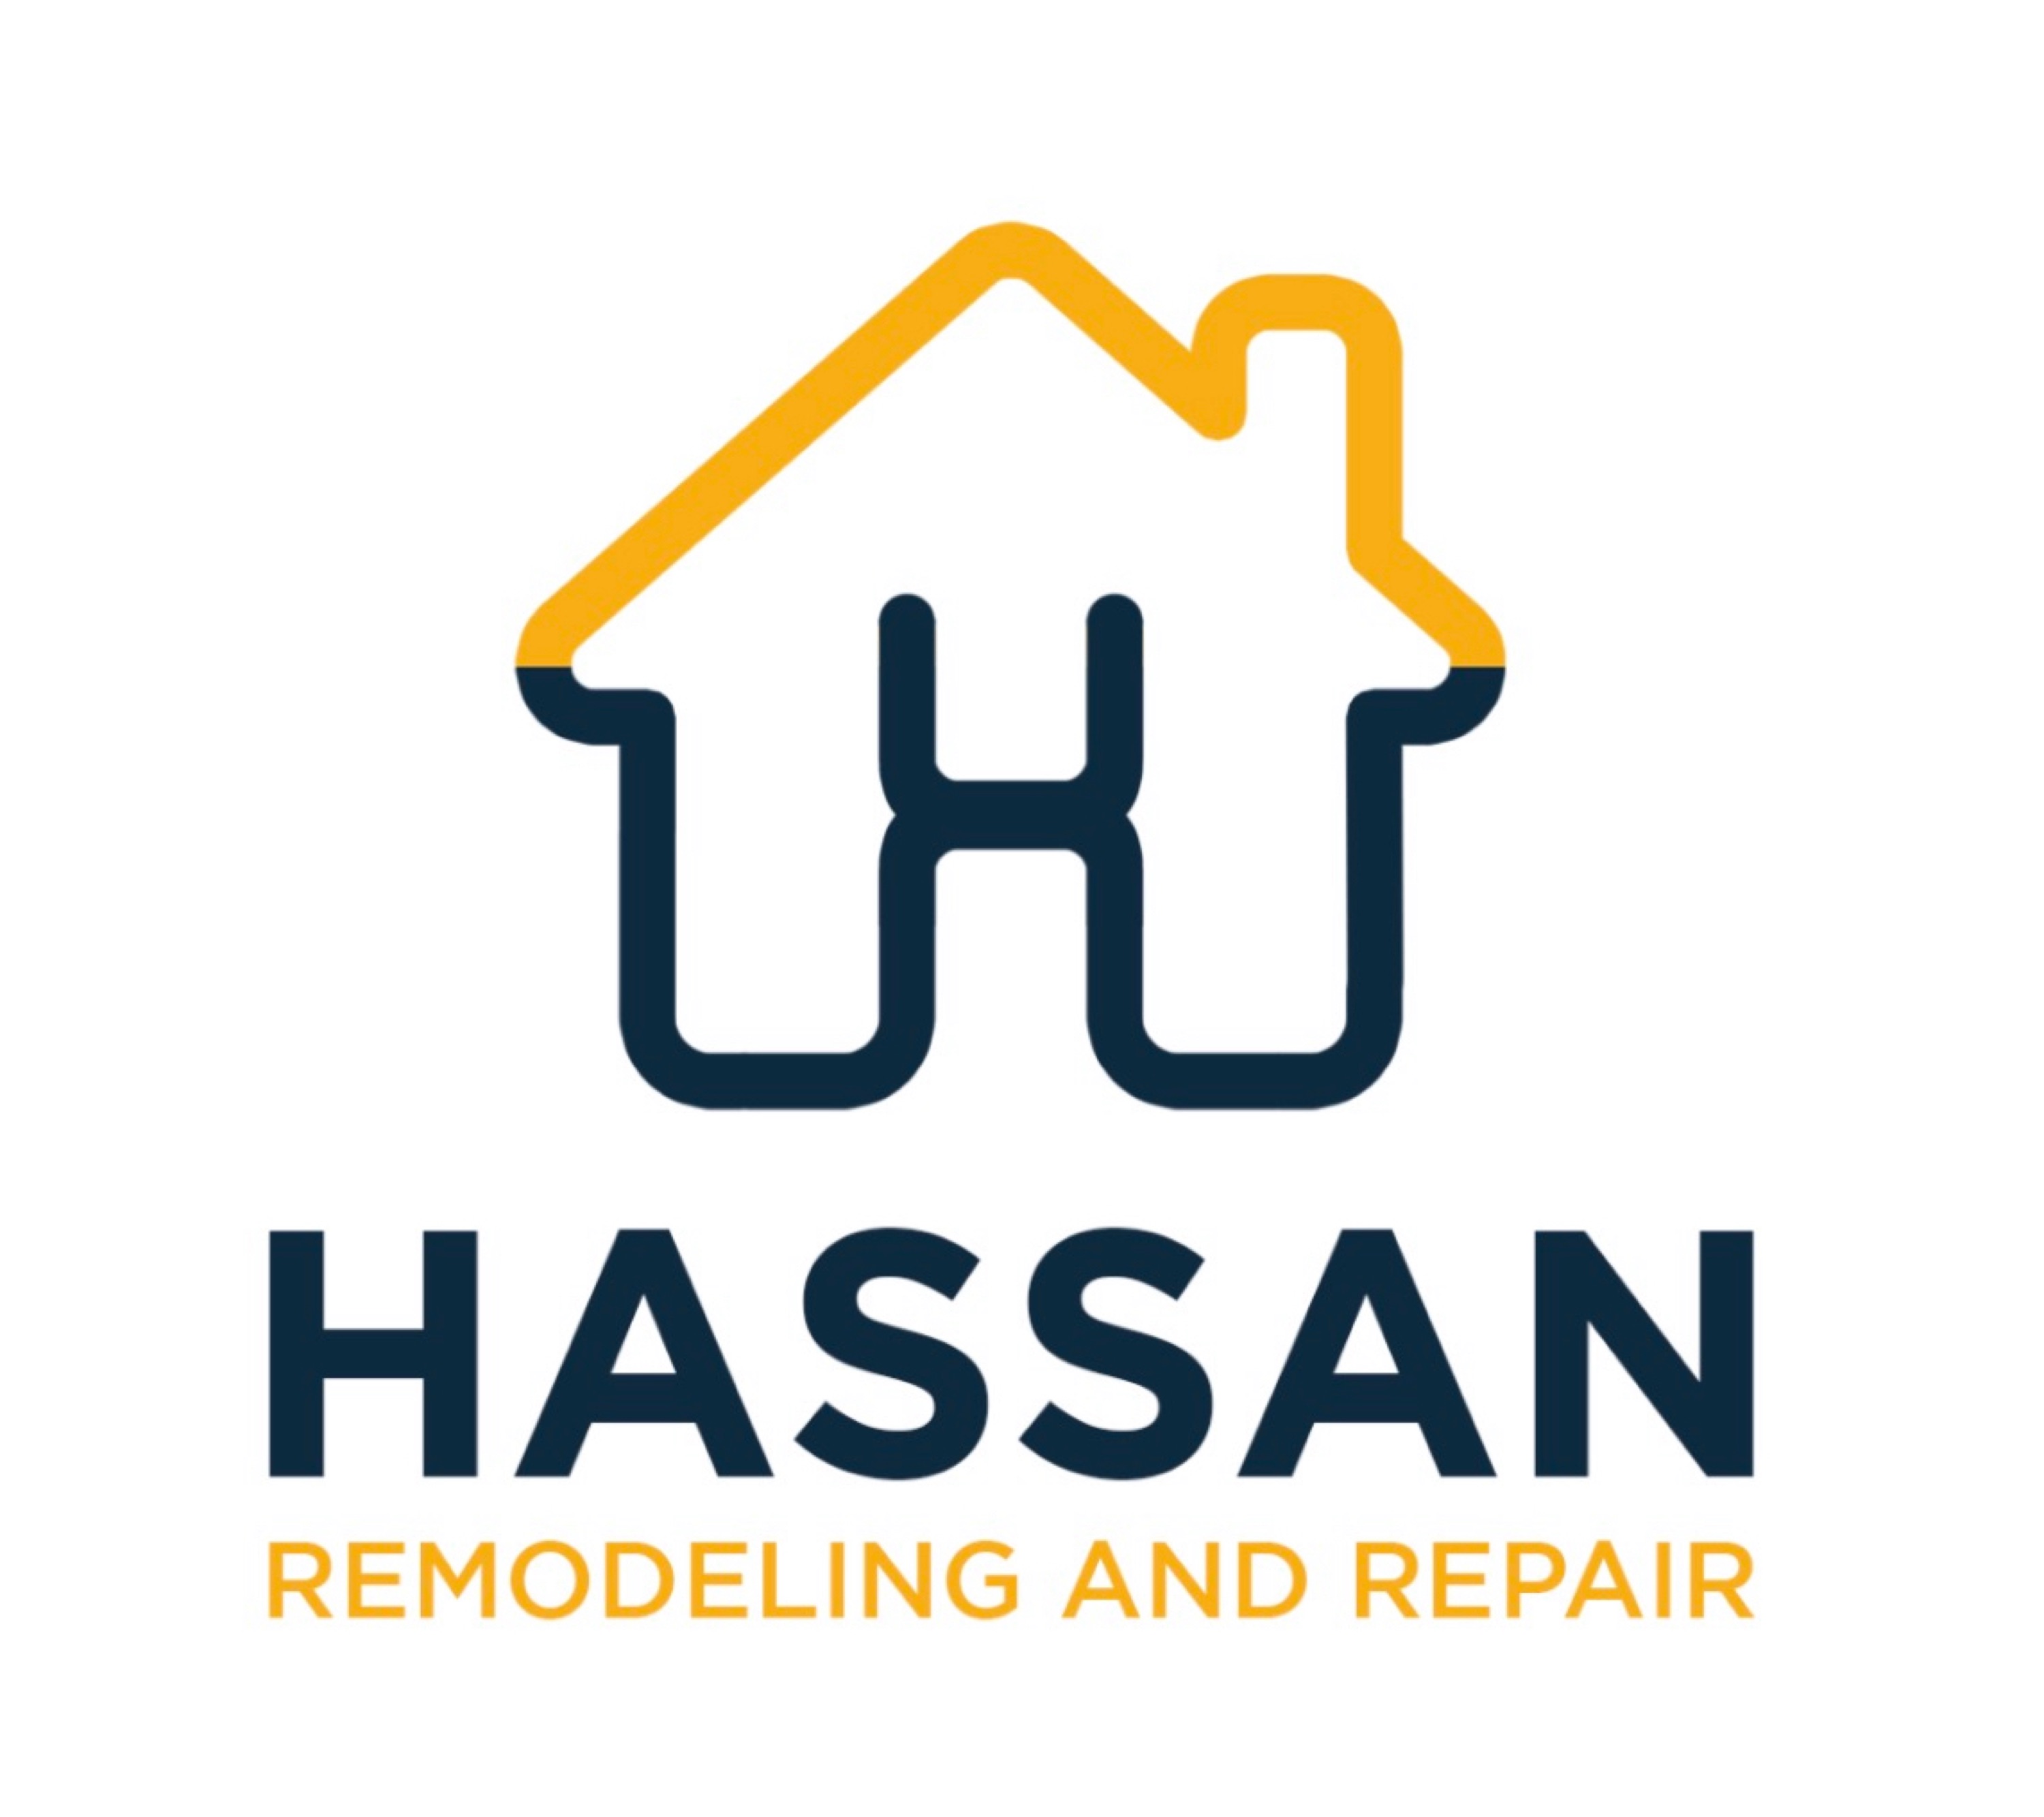 Hassan Remodeling and Repair, LLC Logo